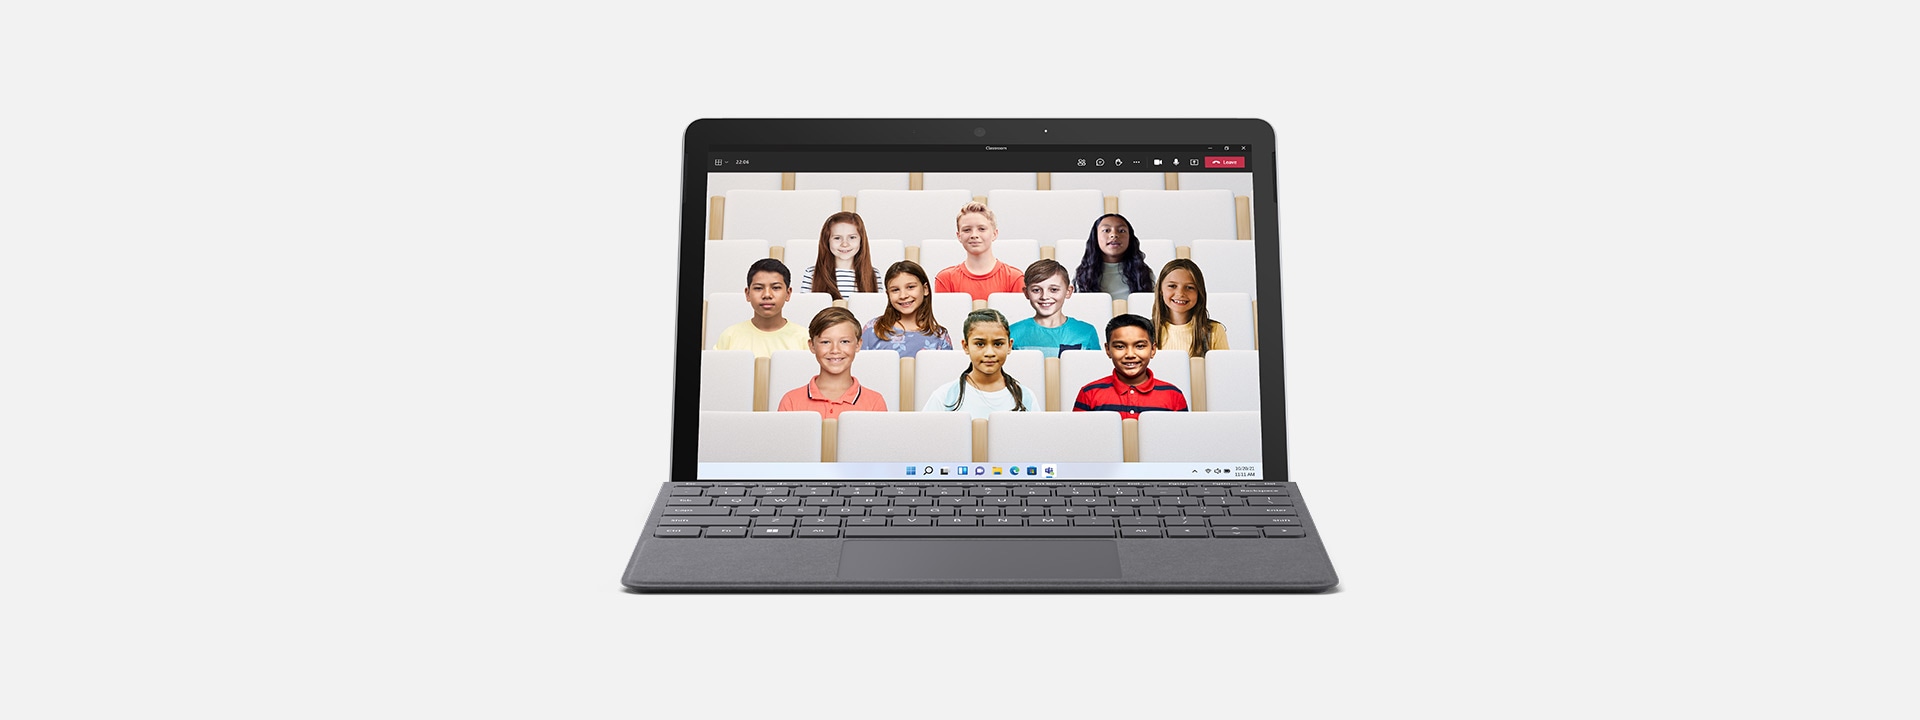 當做筆記型電腦的 Surface Go 3 顯示教室 Teams 環境。